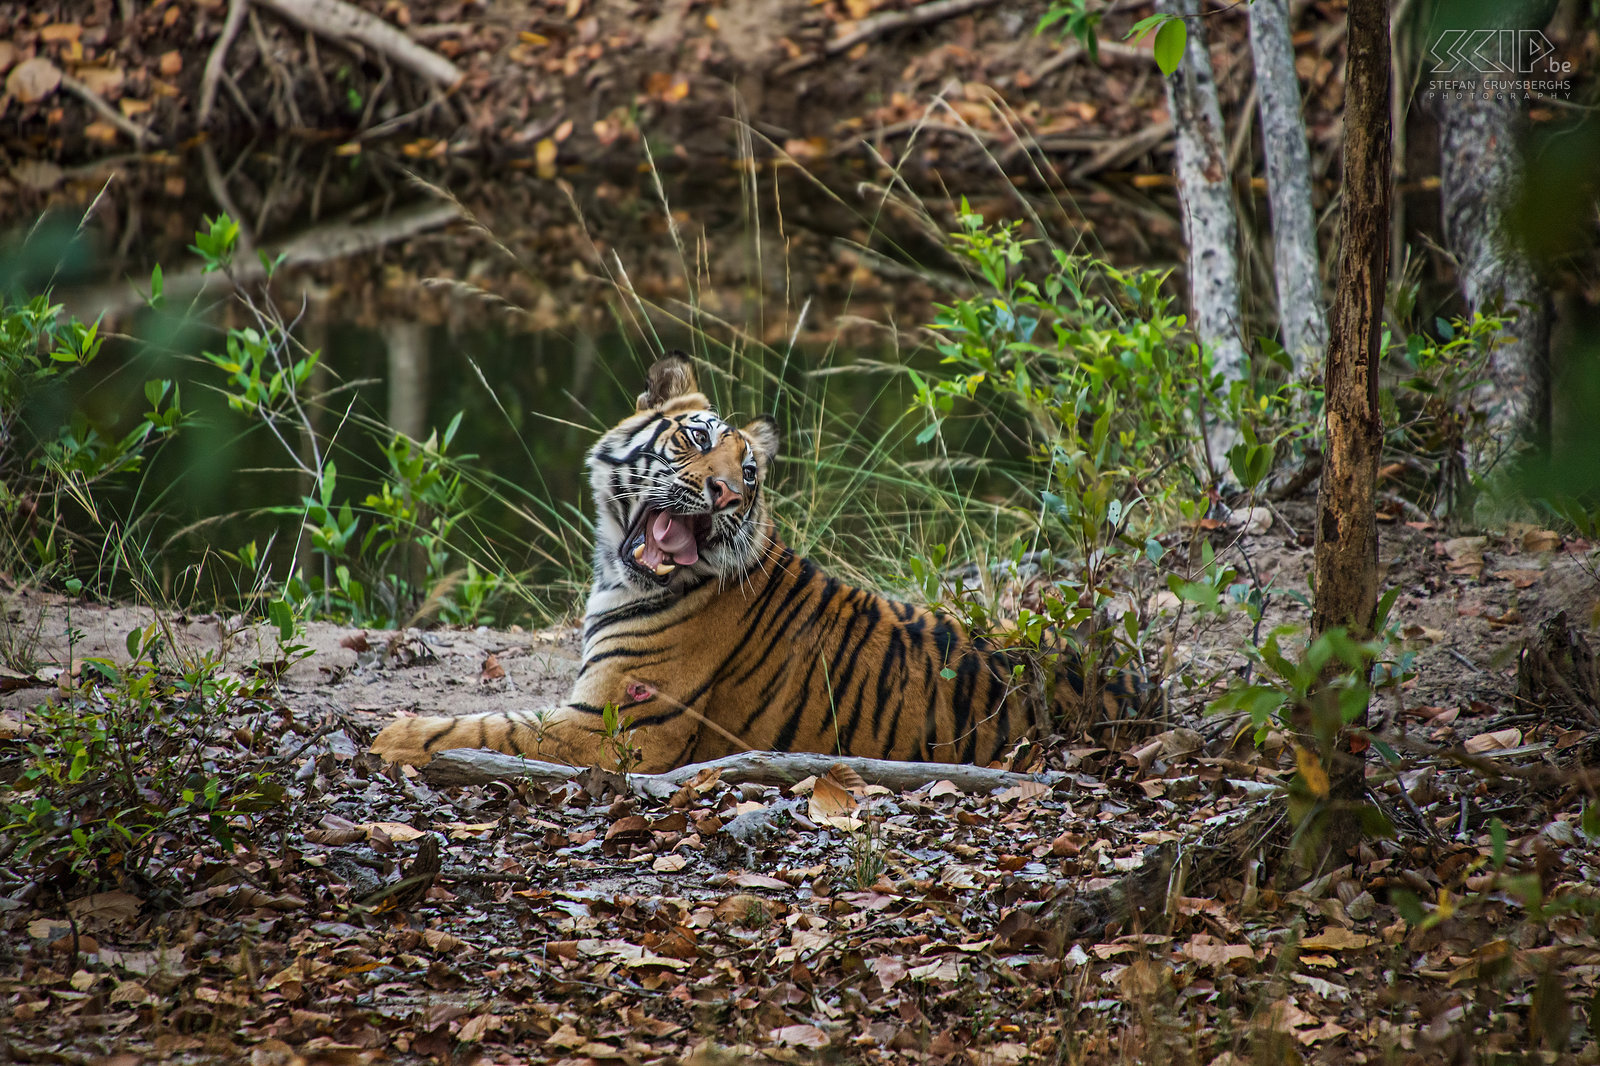 Bandhavgarh - Tijger Een 2 jaar oude mannelijke Bengaalse tijger in de Banbehi regio in Bandhavgarh nationaal park in India. Ik voelde me bevoorrecht om deze prachtige dieren in het wild te kunnen zien. Zoals je kan zien had hij een kleine wond aan zijn voorpoot. Stefan Cruysberghs